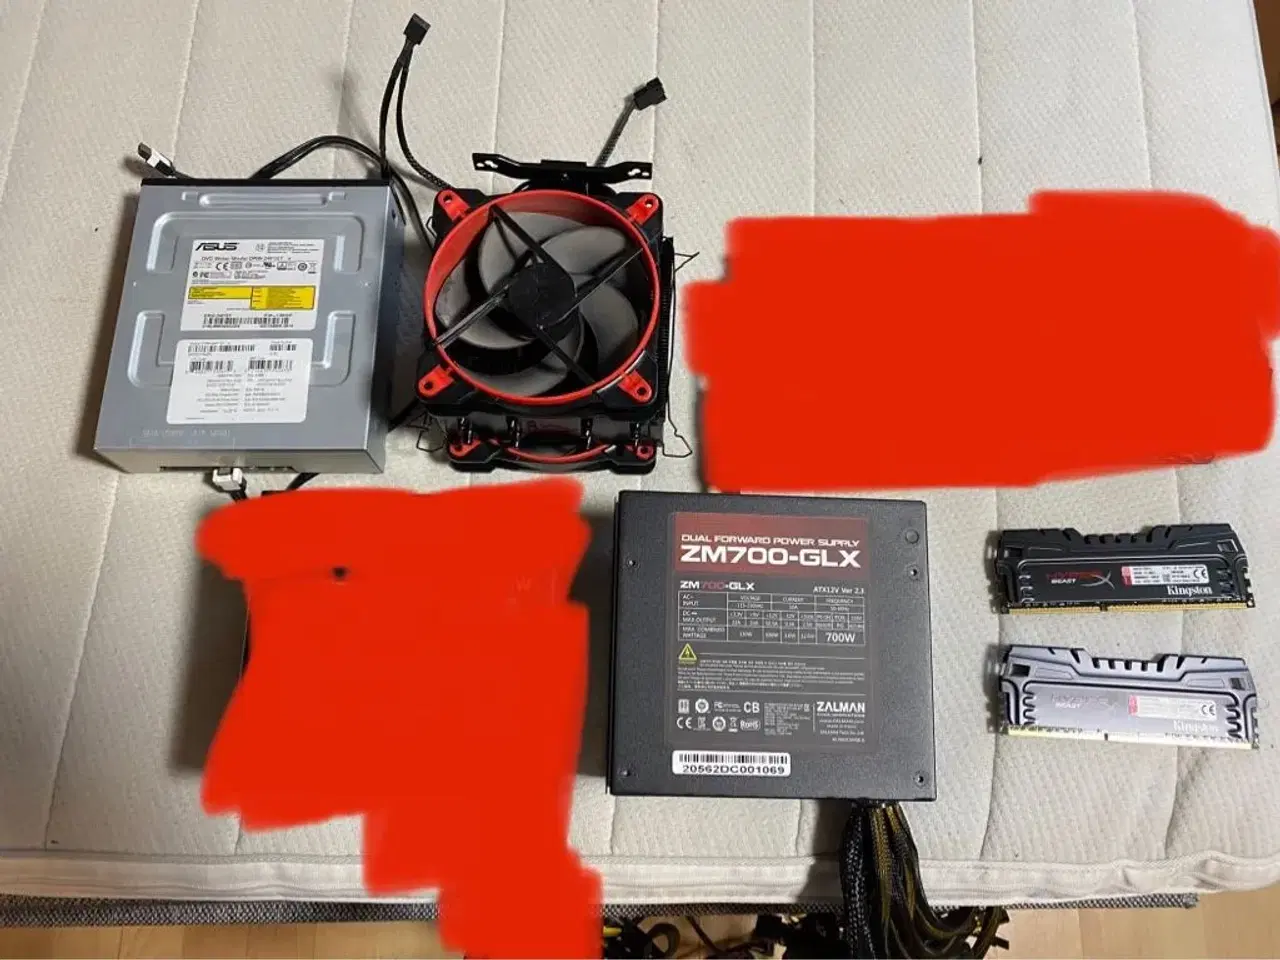 Billede 1 - Luftkøler, PSU, RAM og DVD